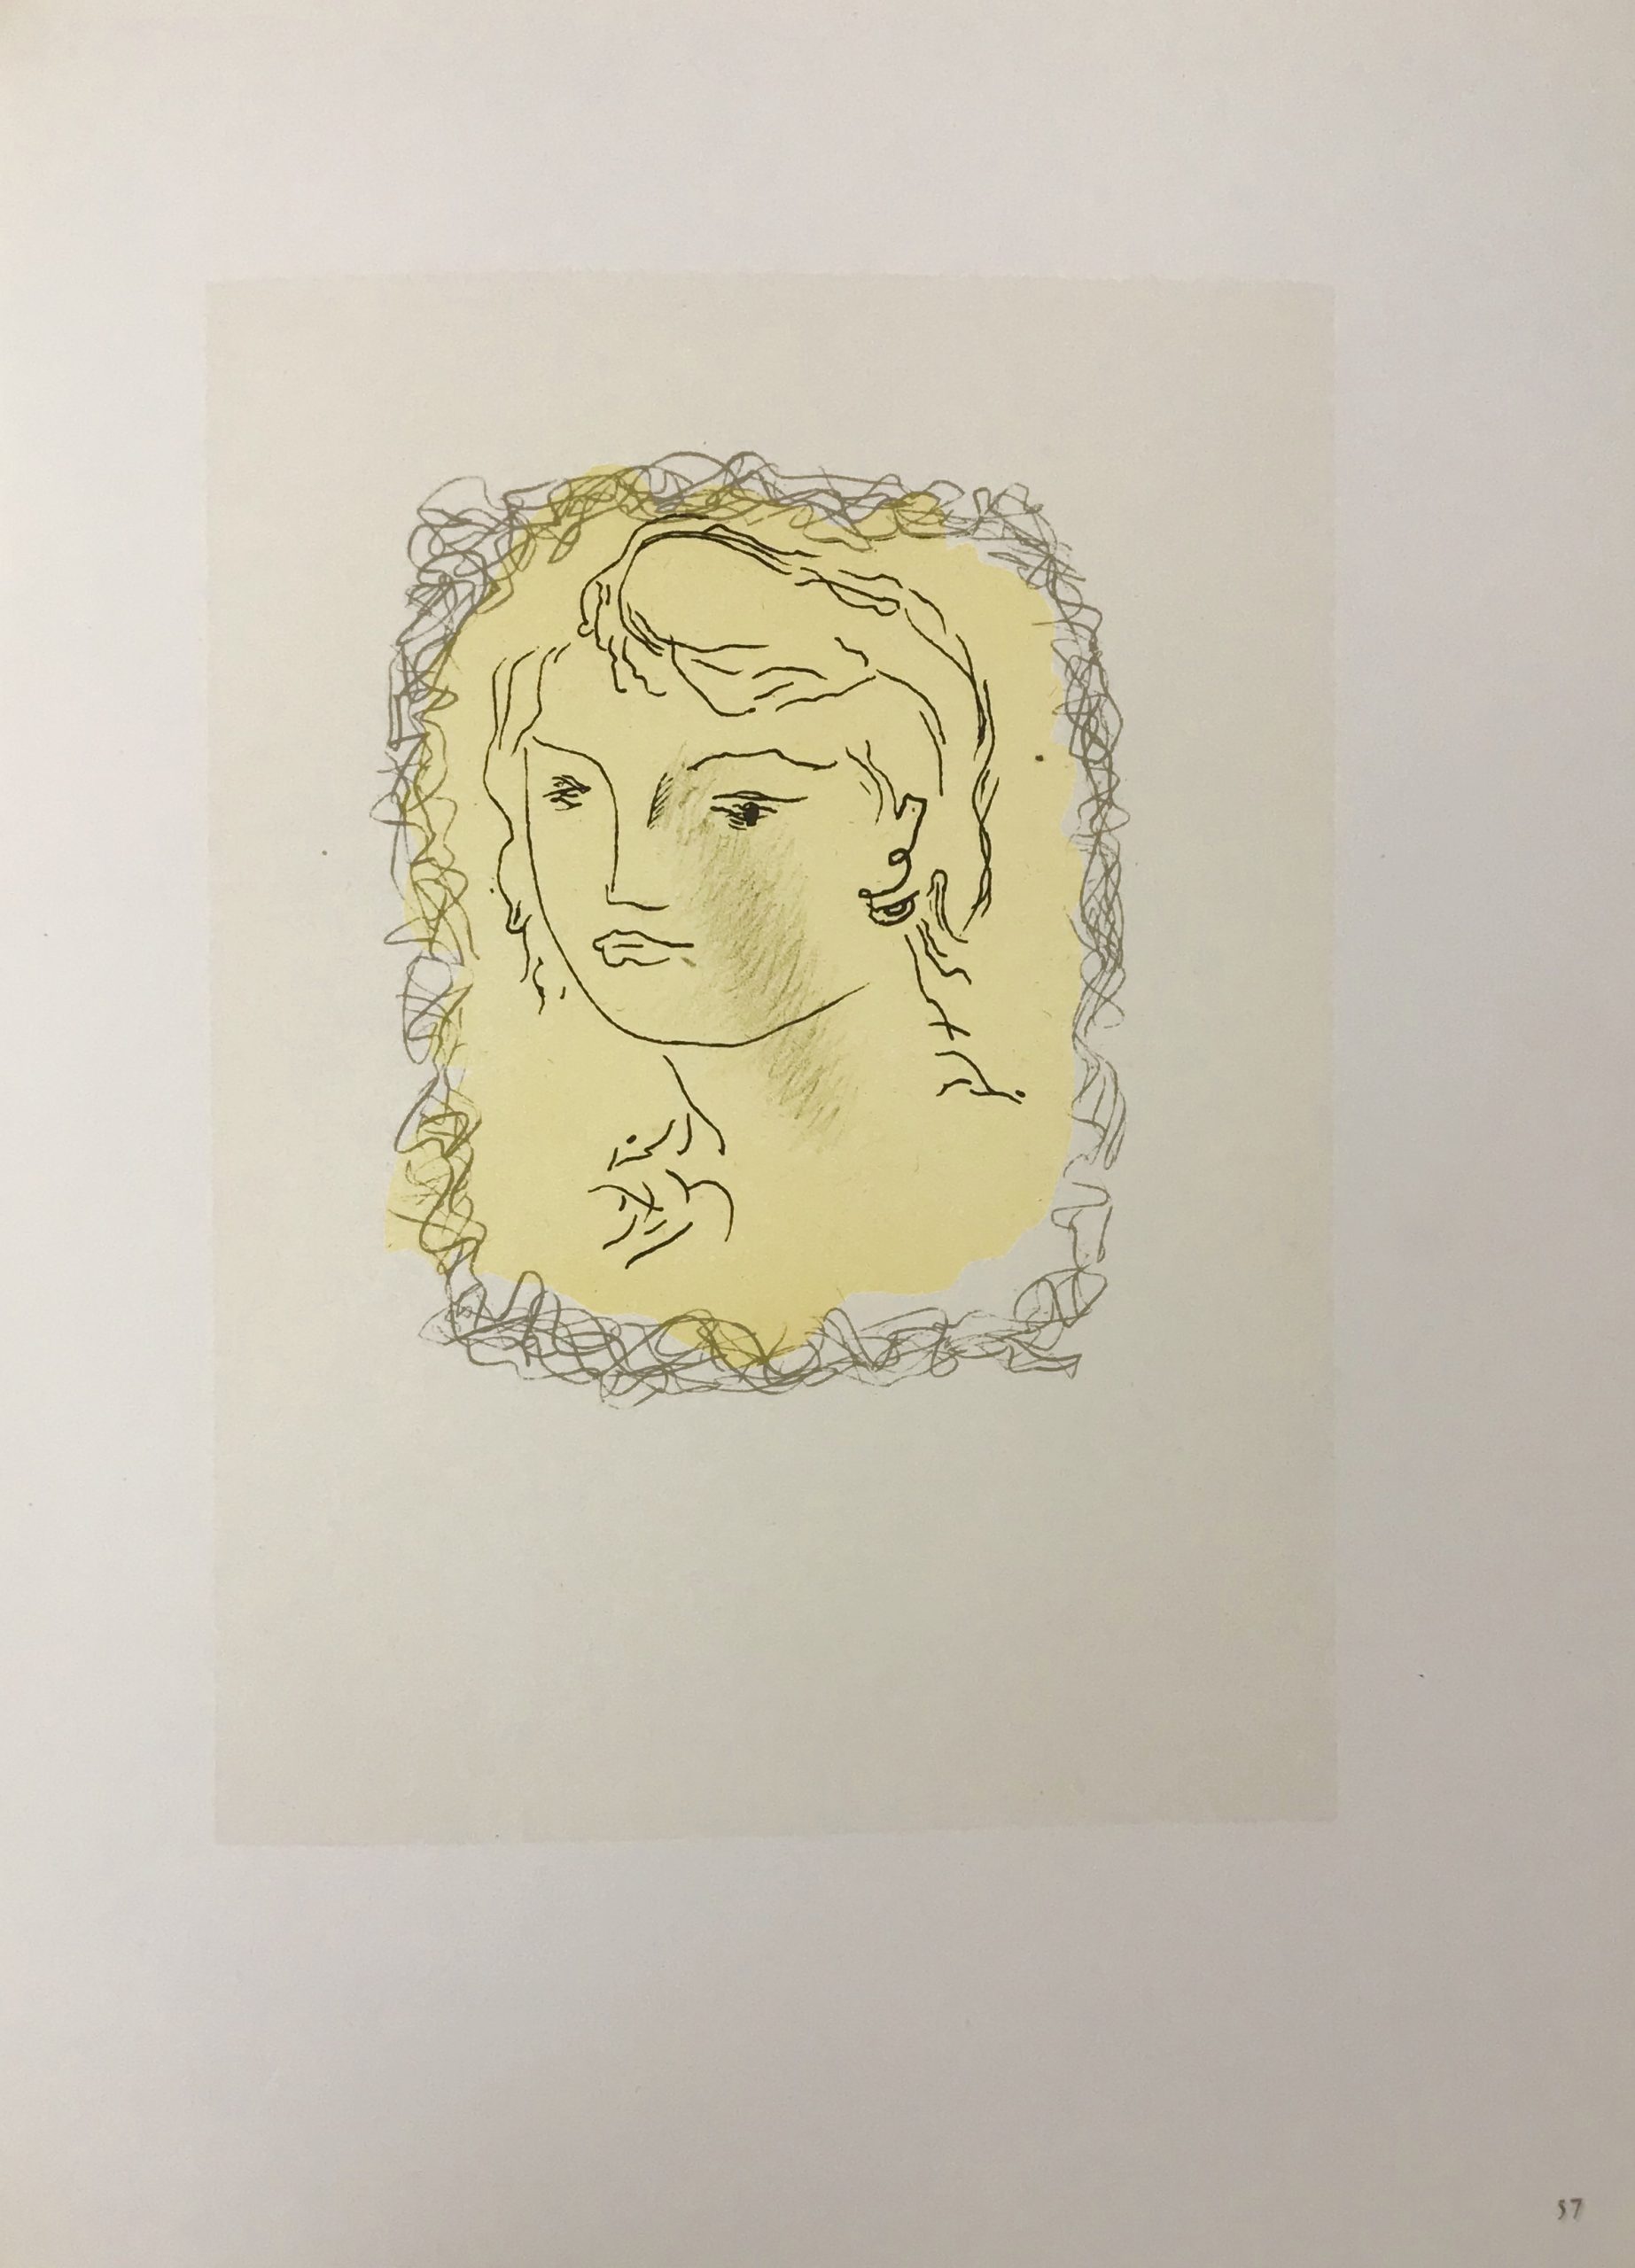 Braque Lithograph "Tete de jeune fille" 1963 Mourlot